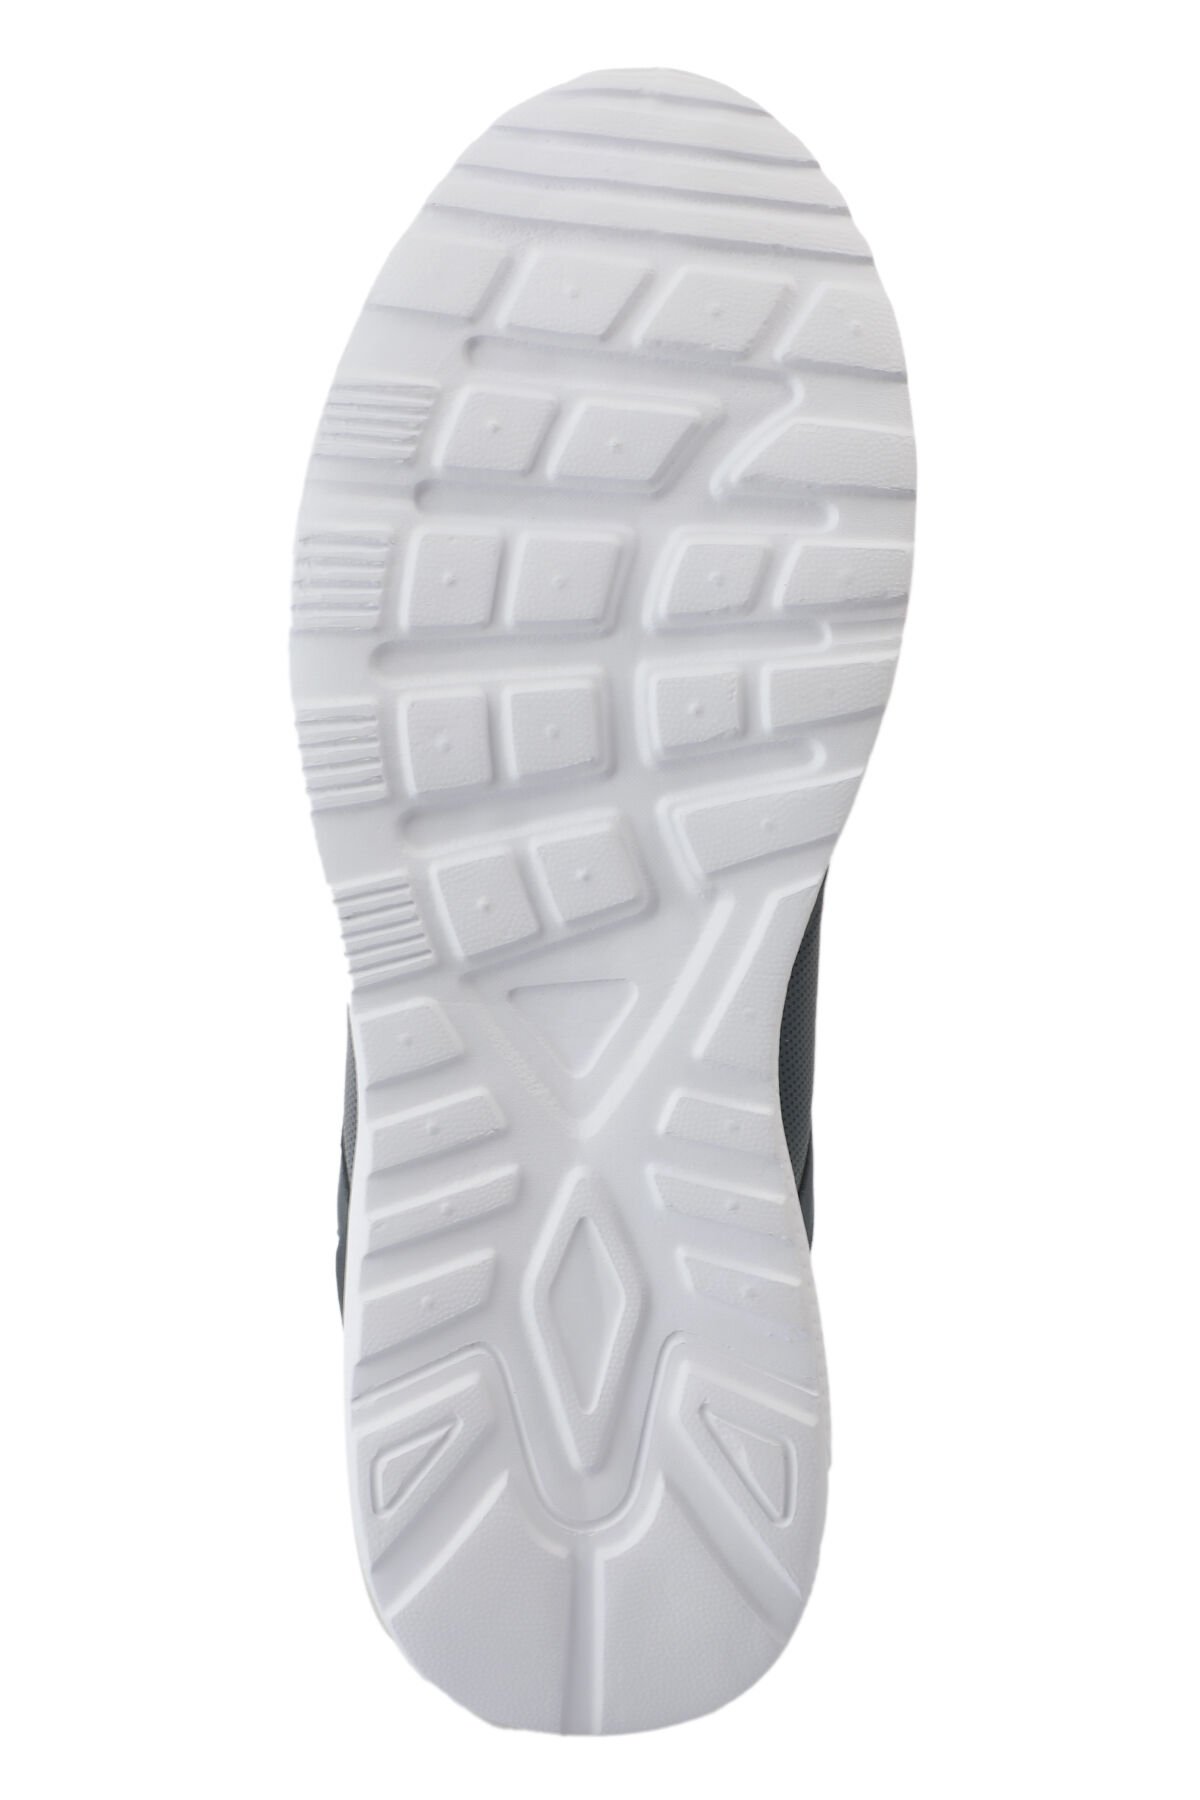 Slazenger ENRICA Sneaker Erkek Ayakkabı Lacivert - Thumbnail